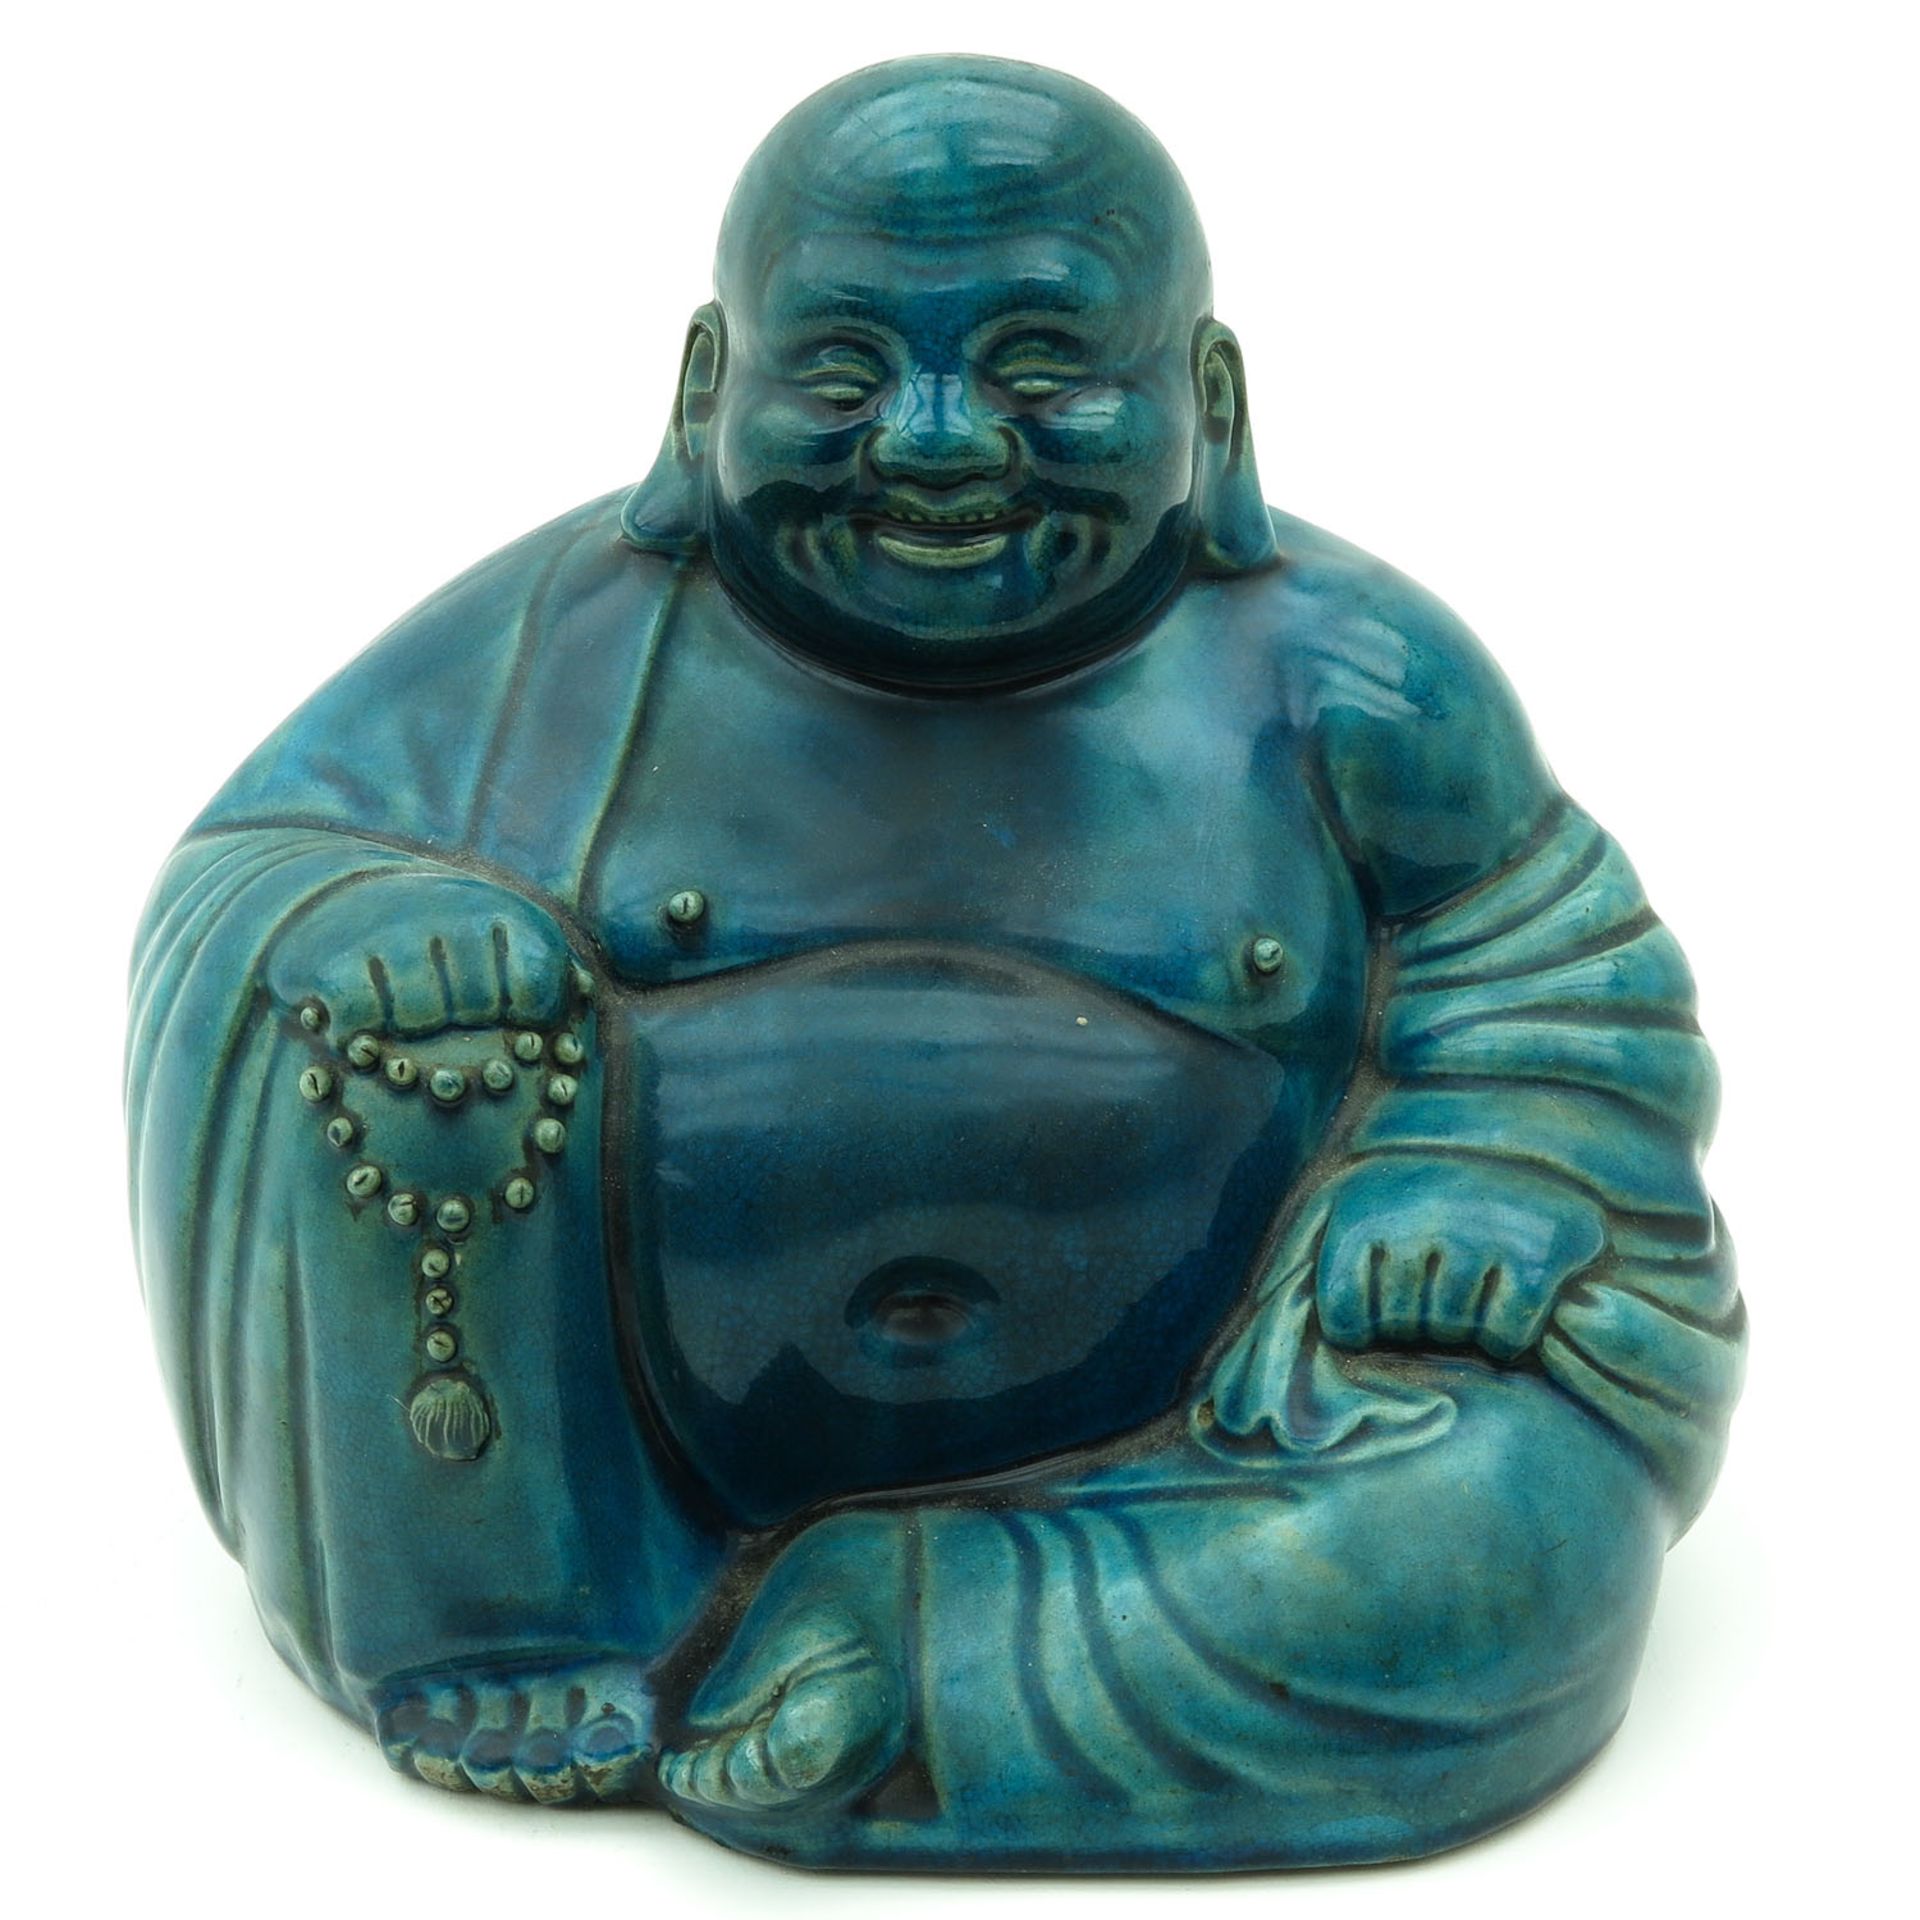 A Hotai Buddha Sculpture